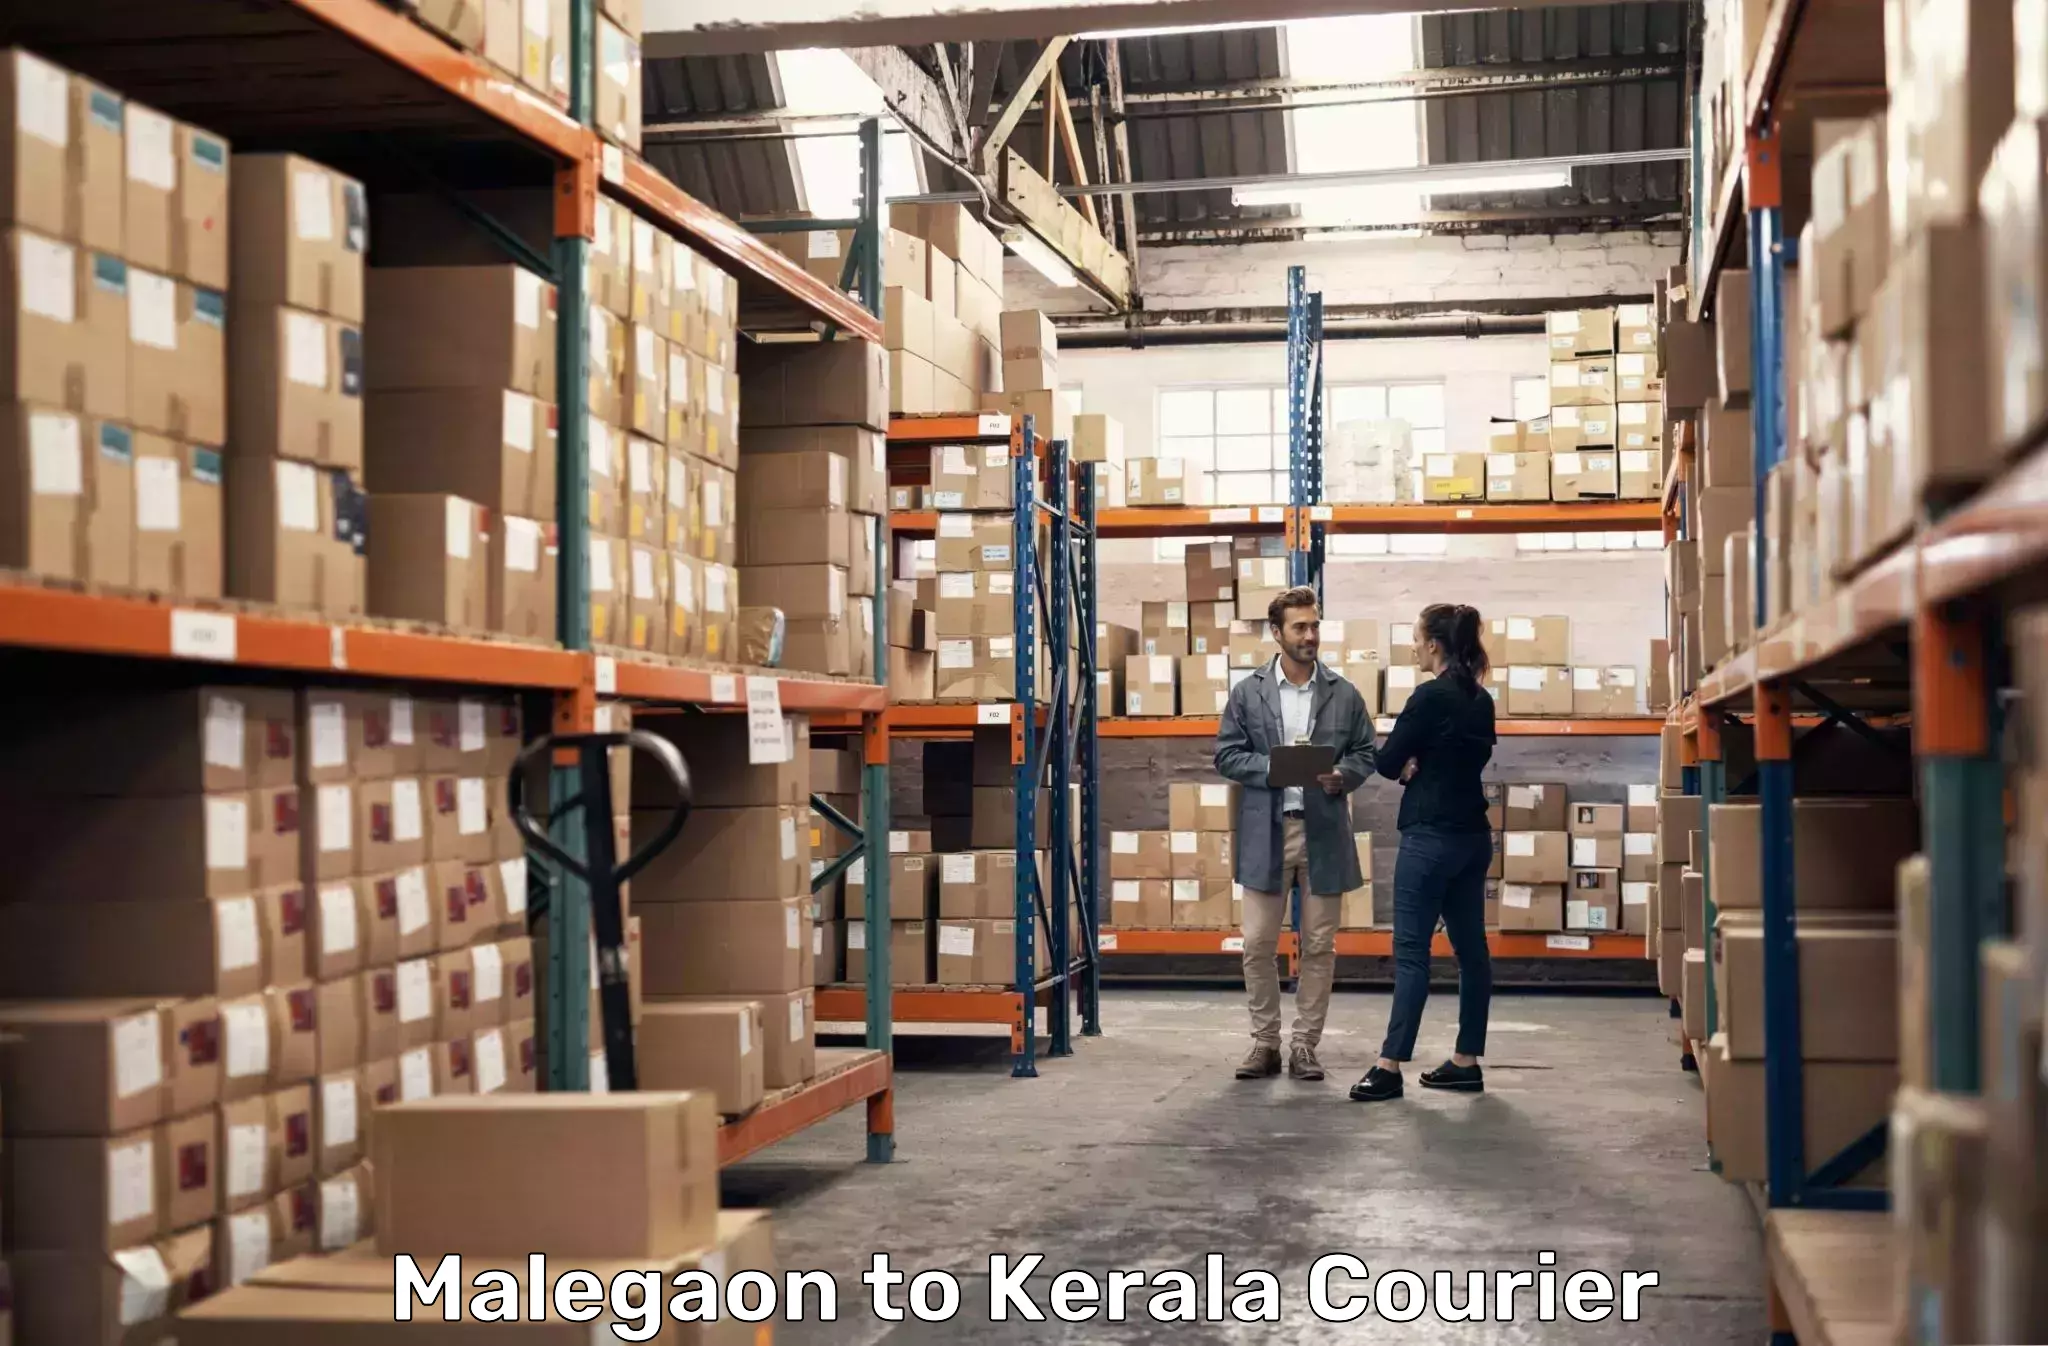 Advanced shipping technology Malegaon to Idukki